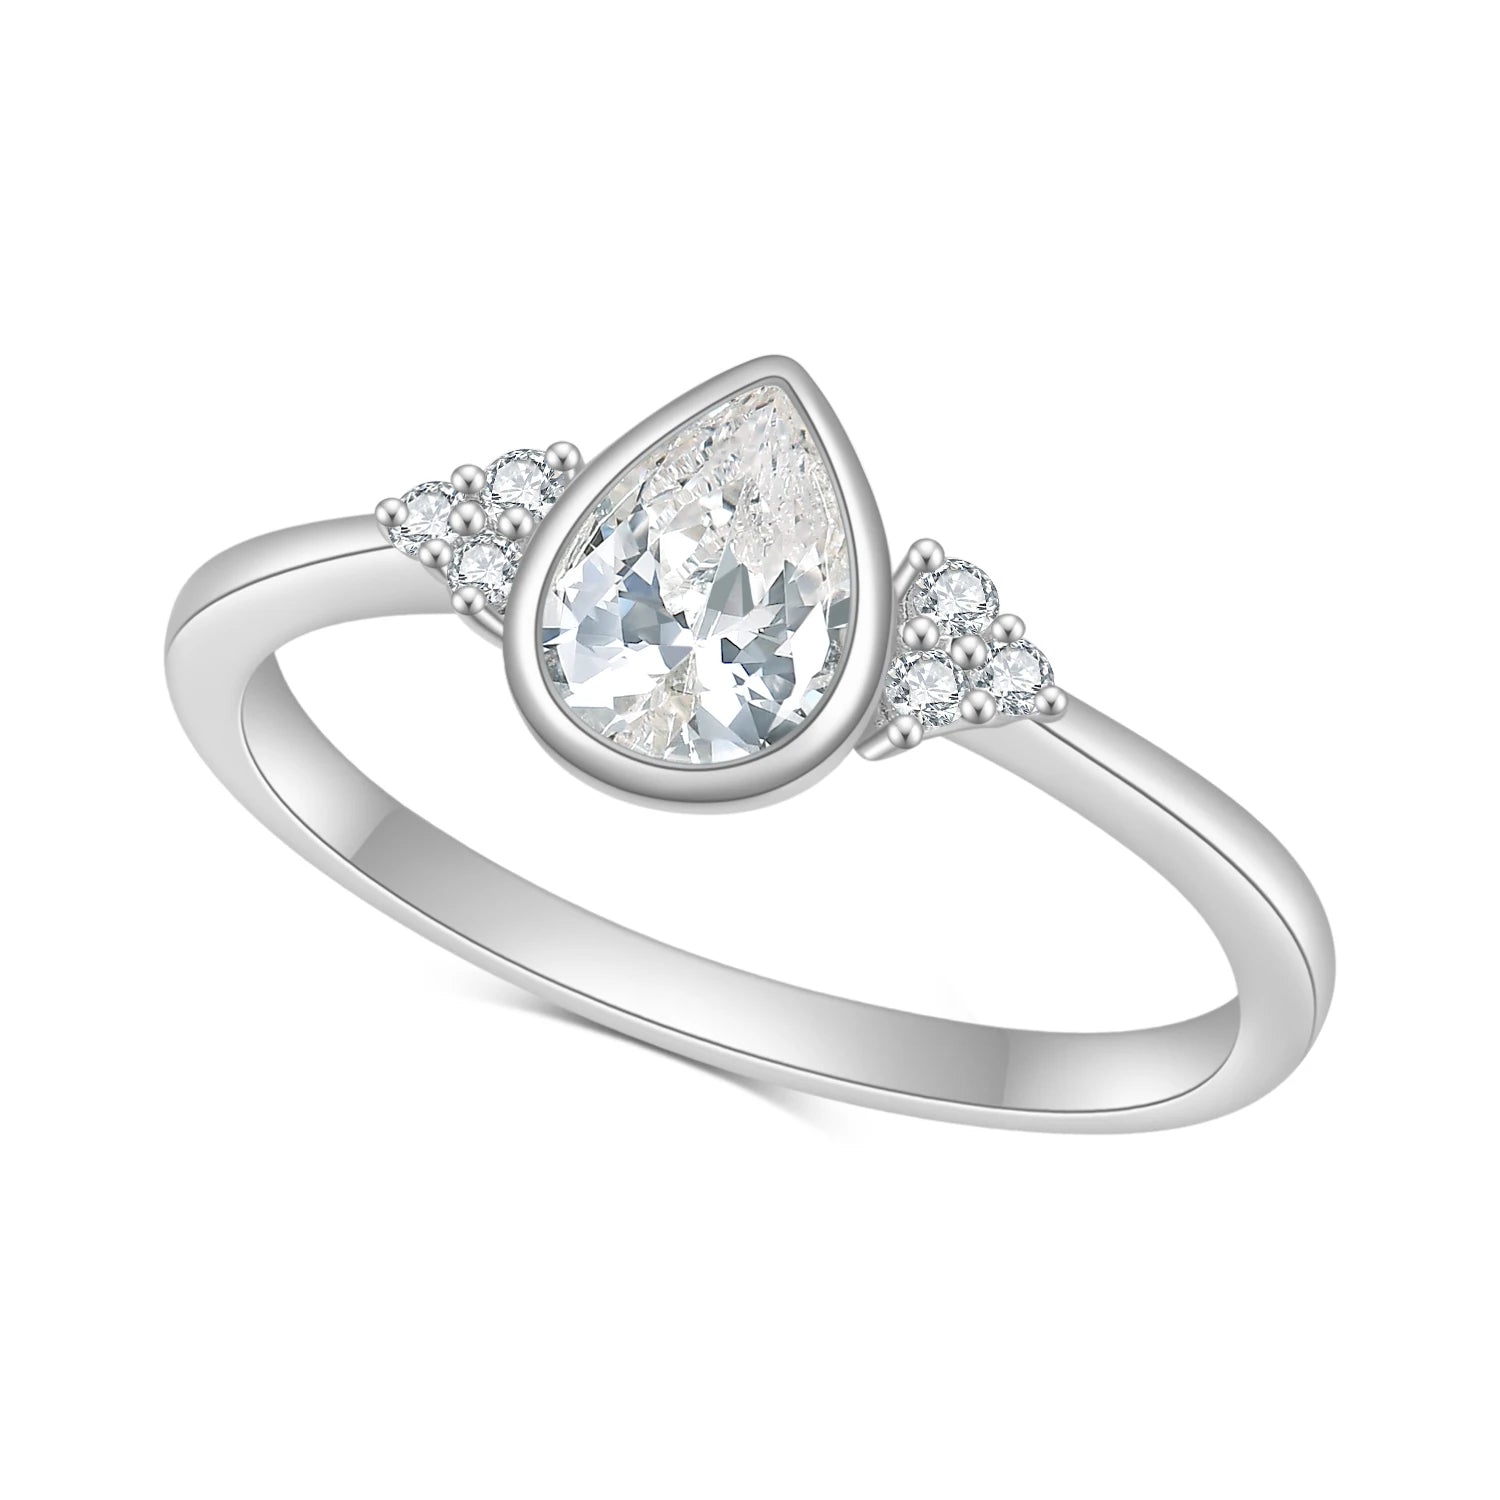 GEM'S BALLET 0.8 Ct Pear Cut Moissanite Bezel Setting Engagement Rings 925 Sterling Silver Moissanite Promise Ring Gift For Her 925 Sterling Silver White Gold